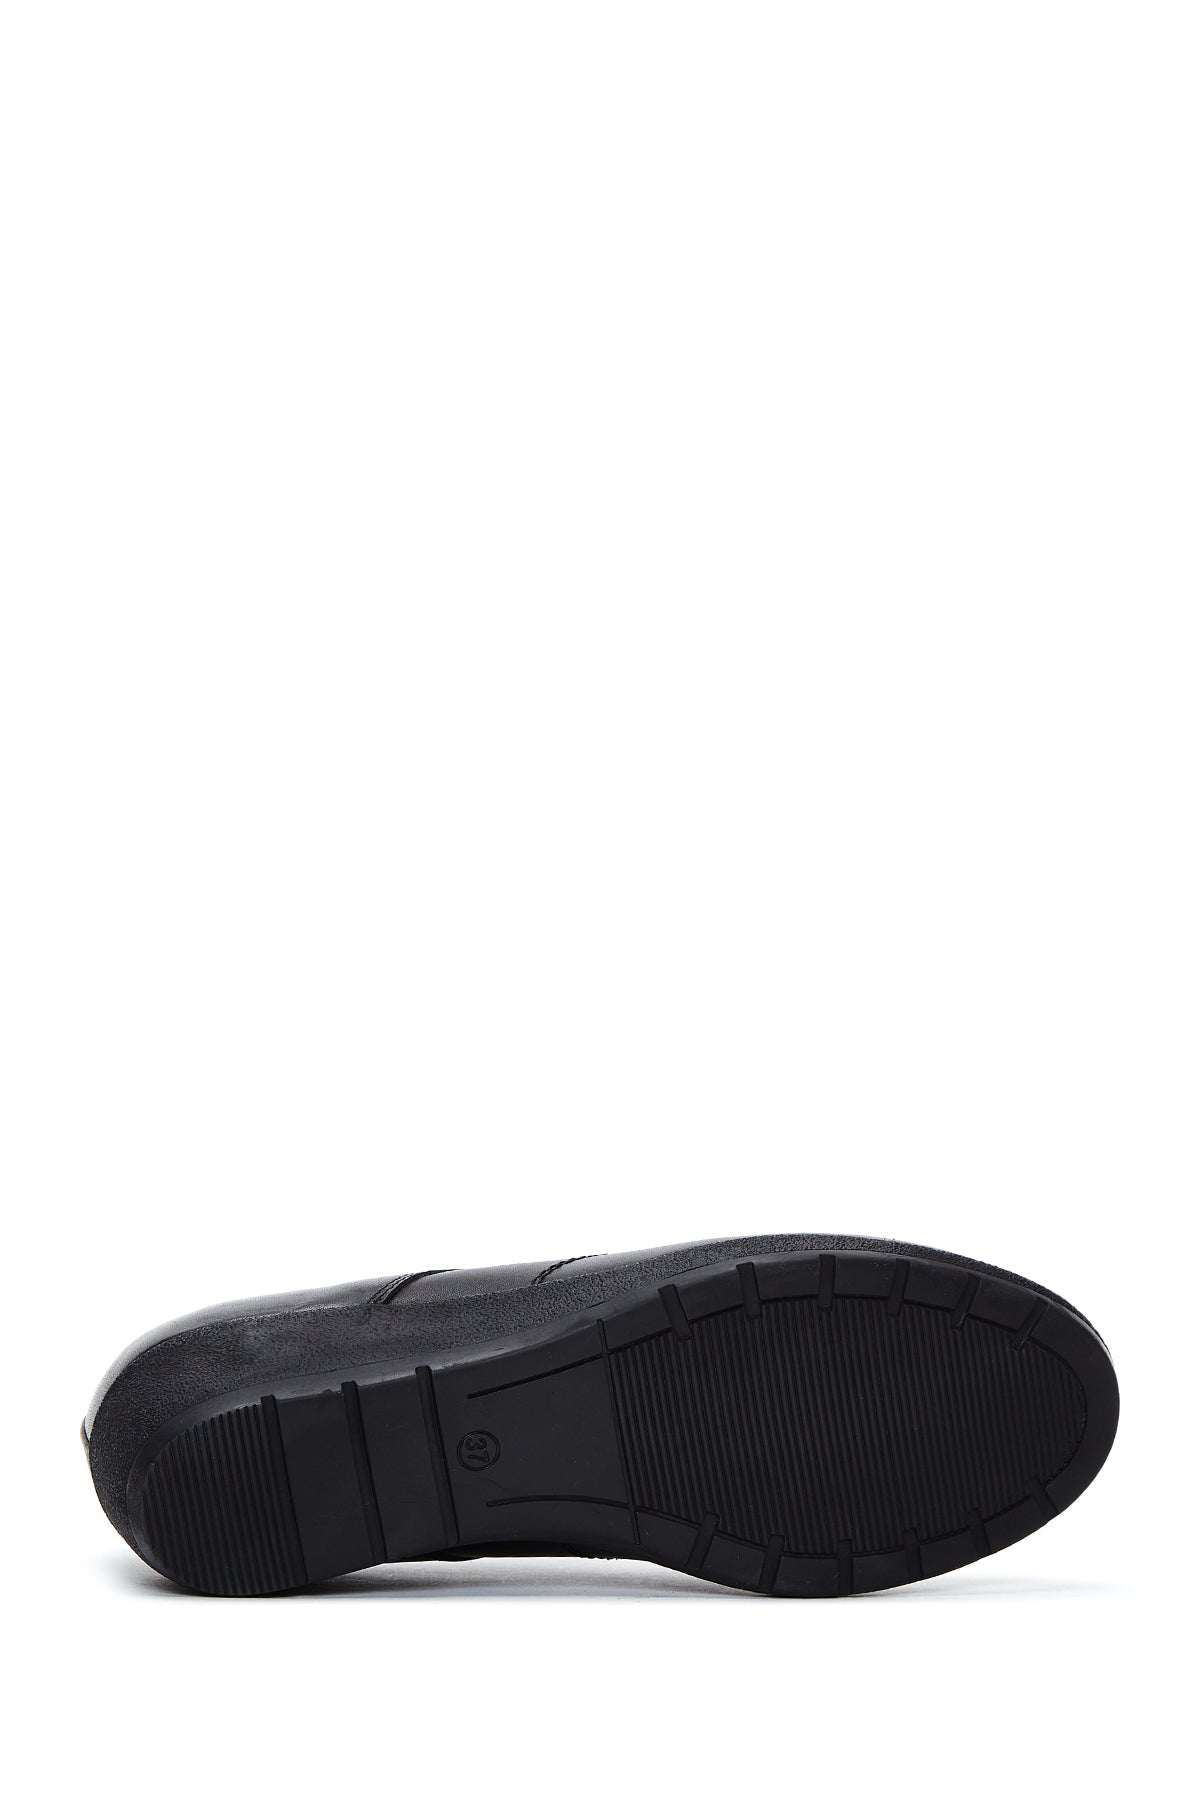 Kadın Siyah Deri Dolgu Topuk Comfort Ayakkabı